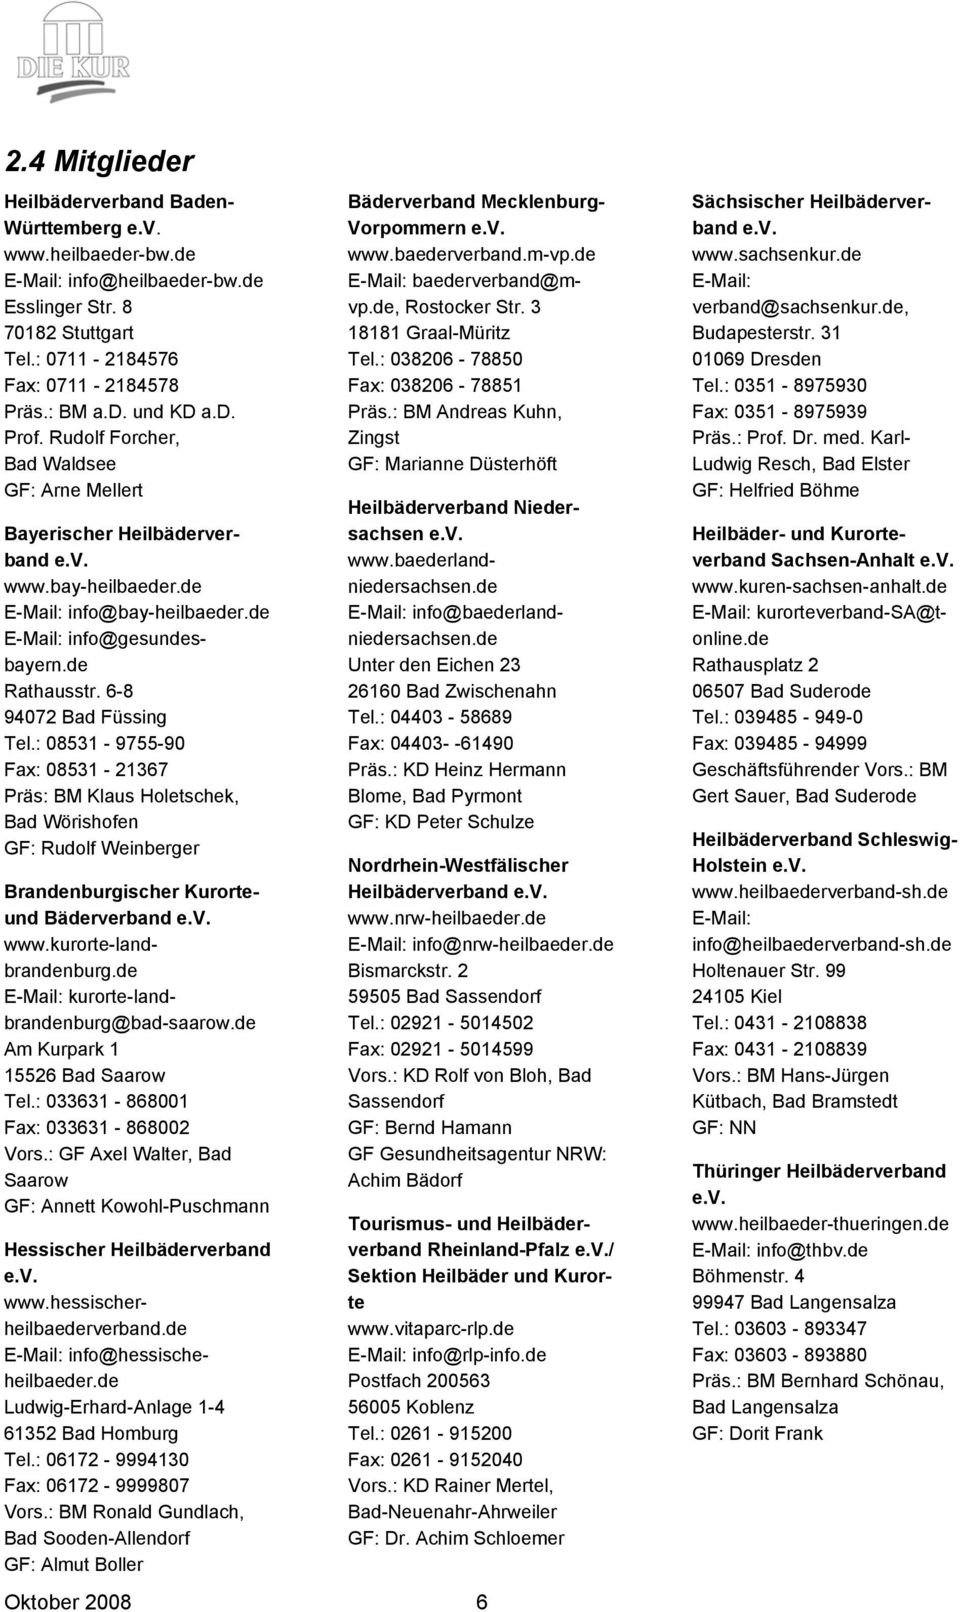 6-8 94072 Bad Füssing Tel.: 08531-9755-90 Fax: 08531-21367 Präs: BM Klaus Holetschek, Bad Wörishofen GF: Rudolf Weinberger Brandenburgischer Kurorteund Bäderverband e.v. www.kurorte-landbrandenburg.